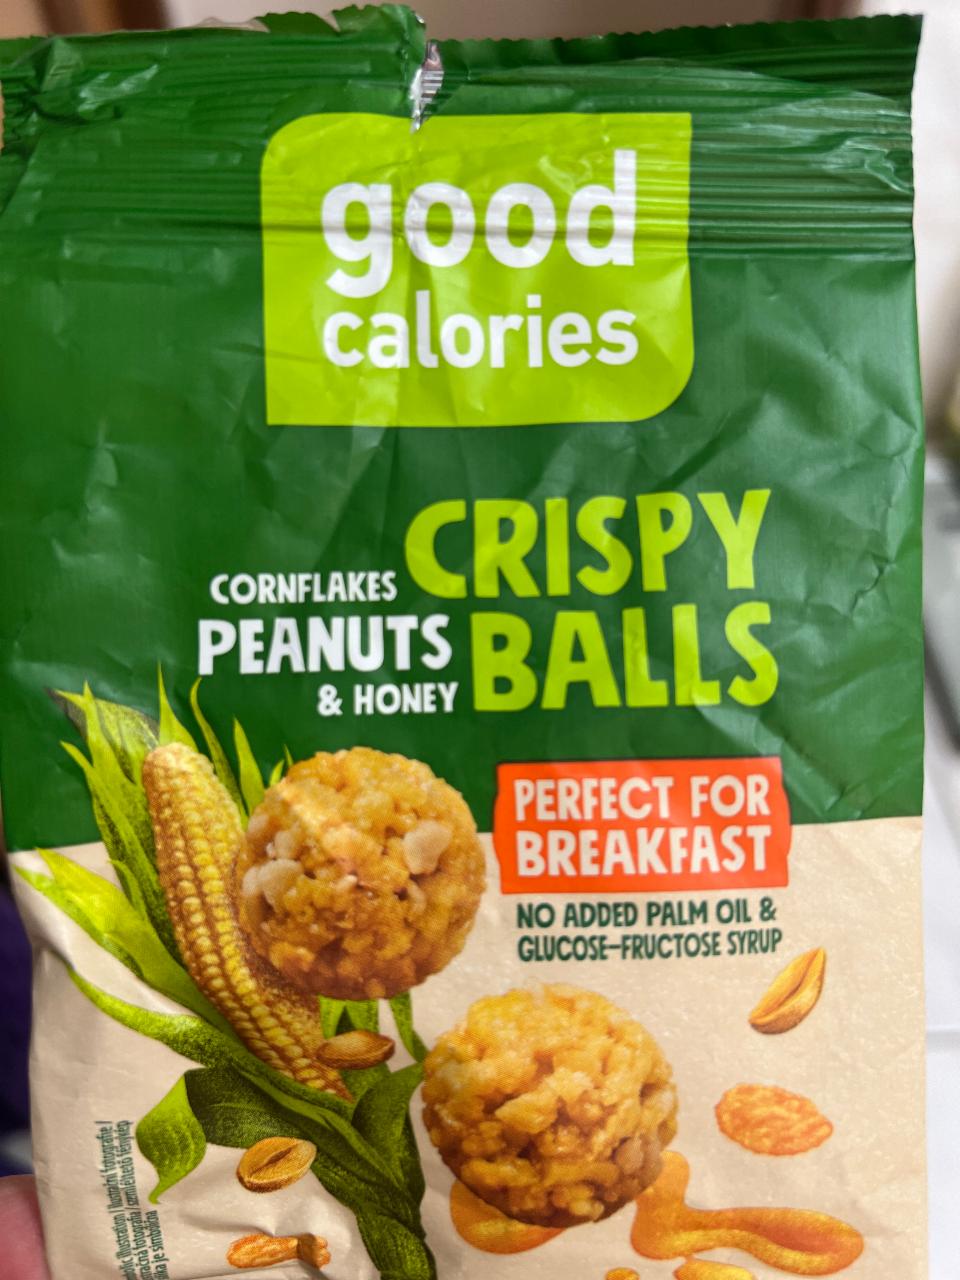 Fotografie - Crispy Balls Cornflakes Peanuts & Honey Good calories